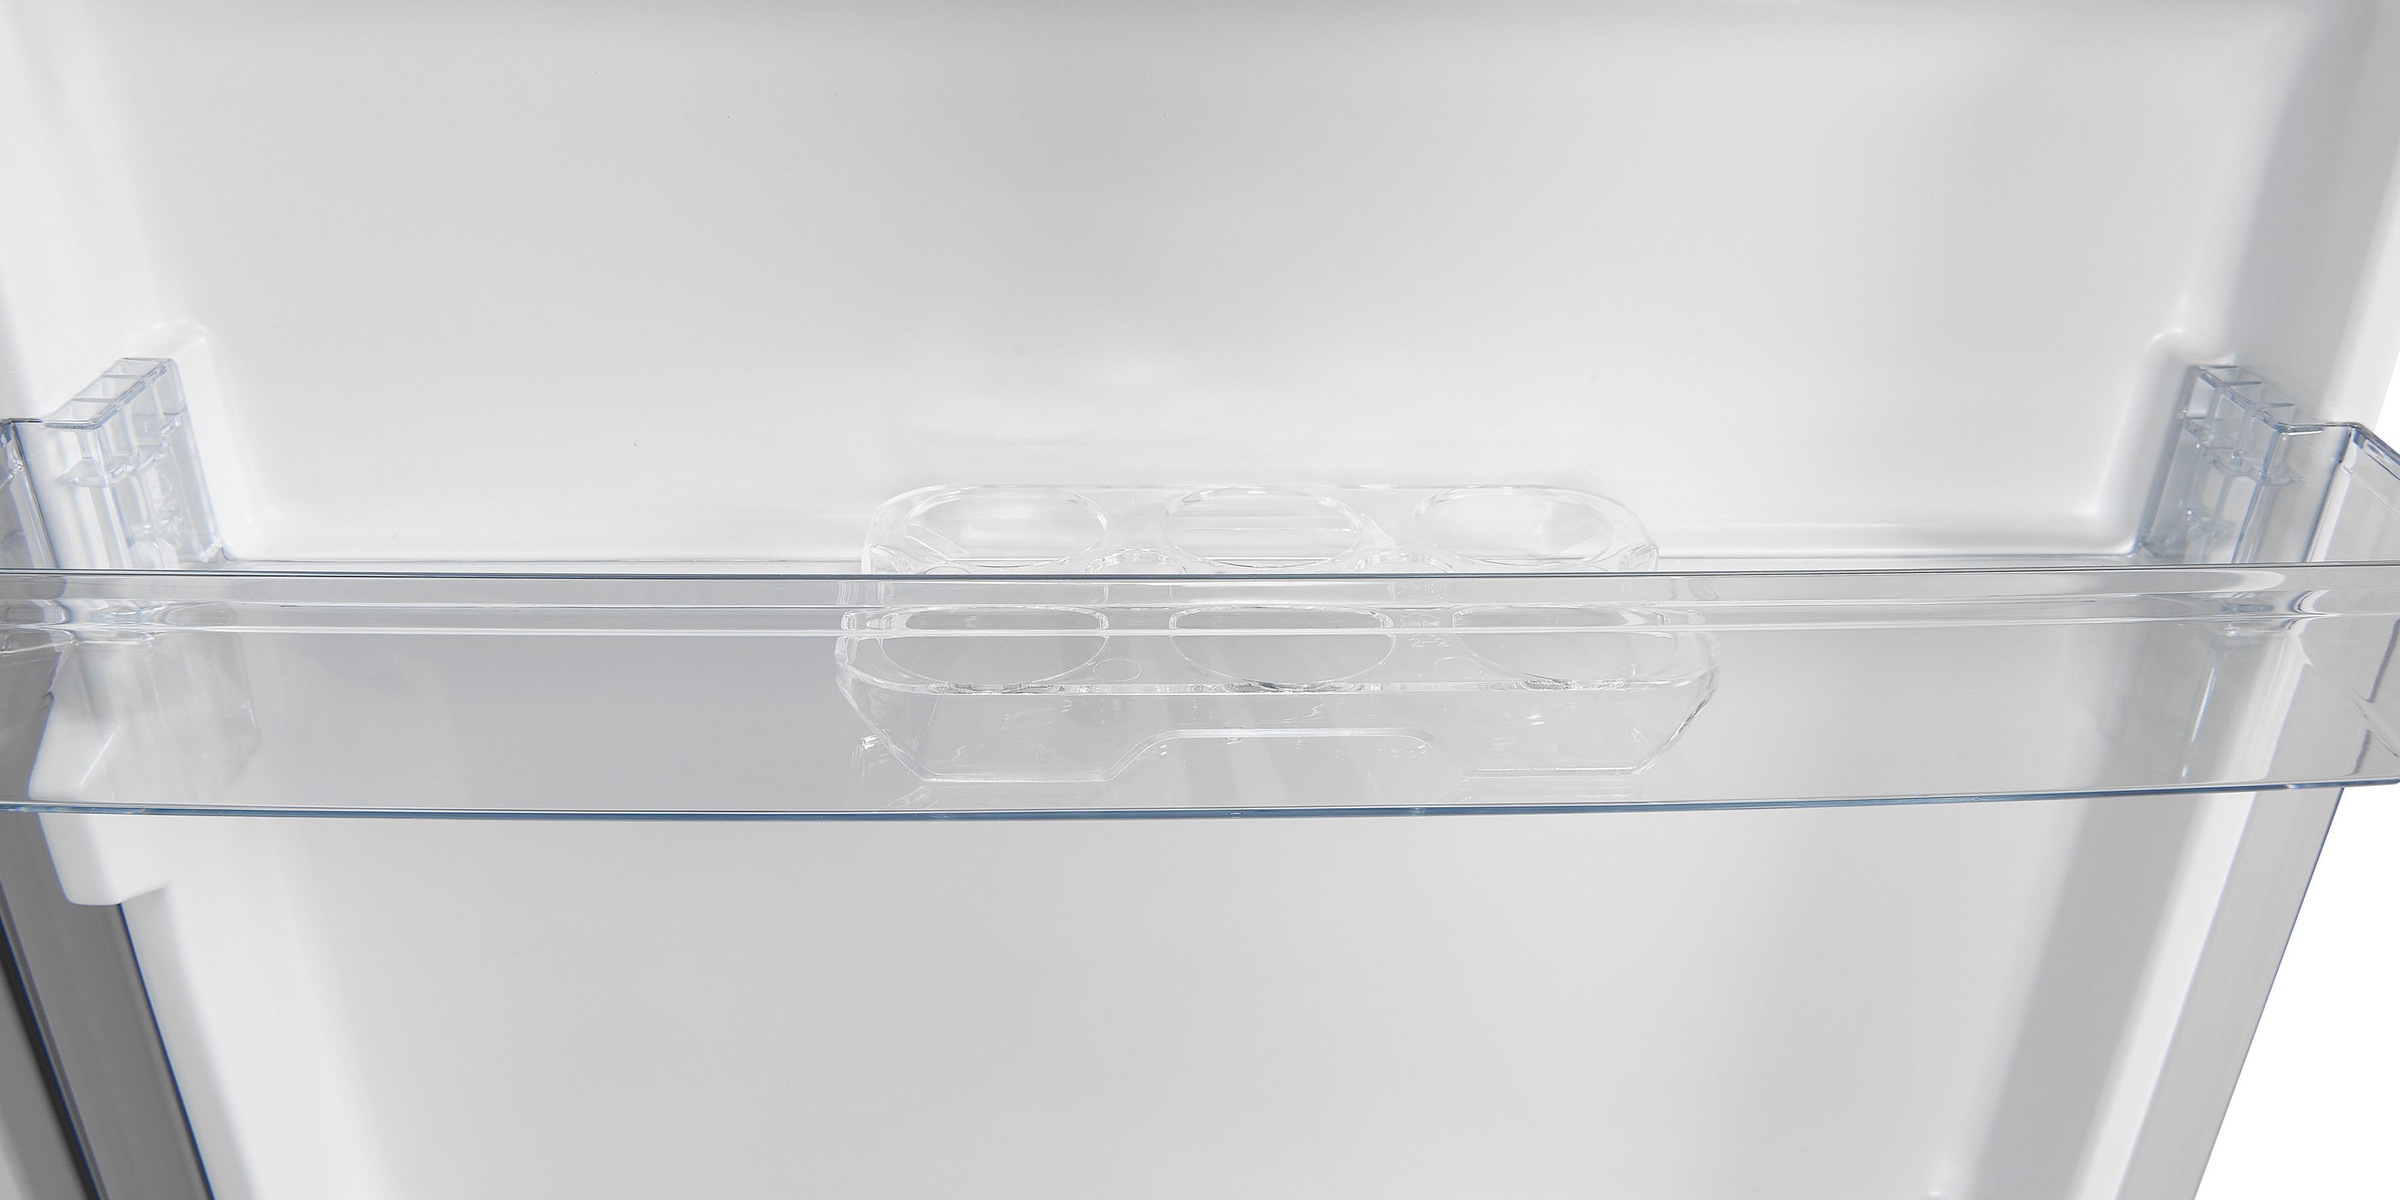 exquisit Vollraumkühlschrank, KS320-V-010E inoxlook, 143,4 cm hoch, 55,0 cm  breit kaufen